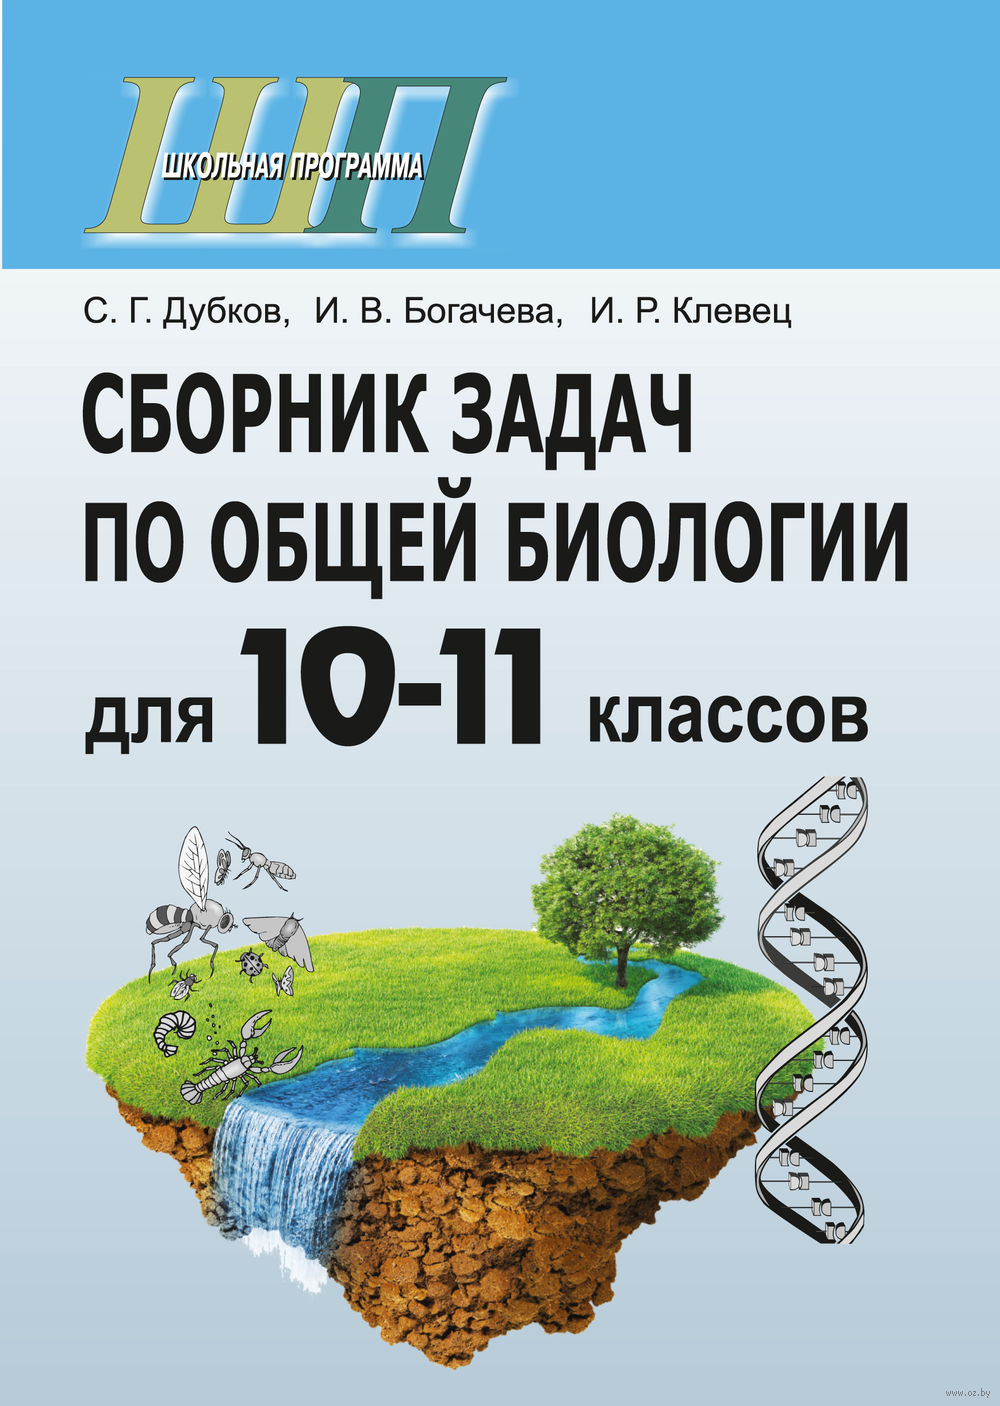 Дубков богачёва клевец сборник задач по общей биологии 10-11 класс